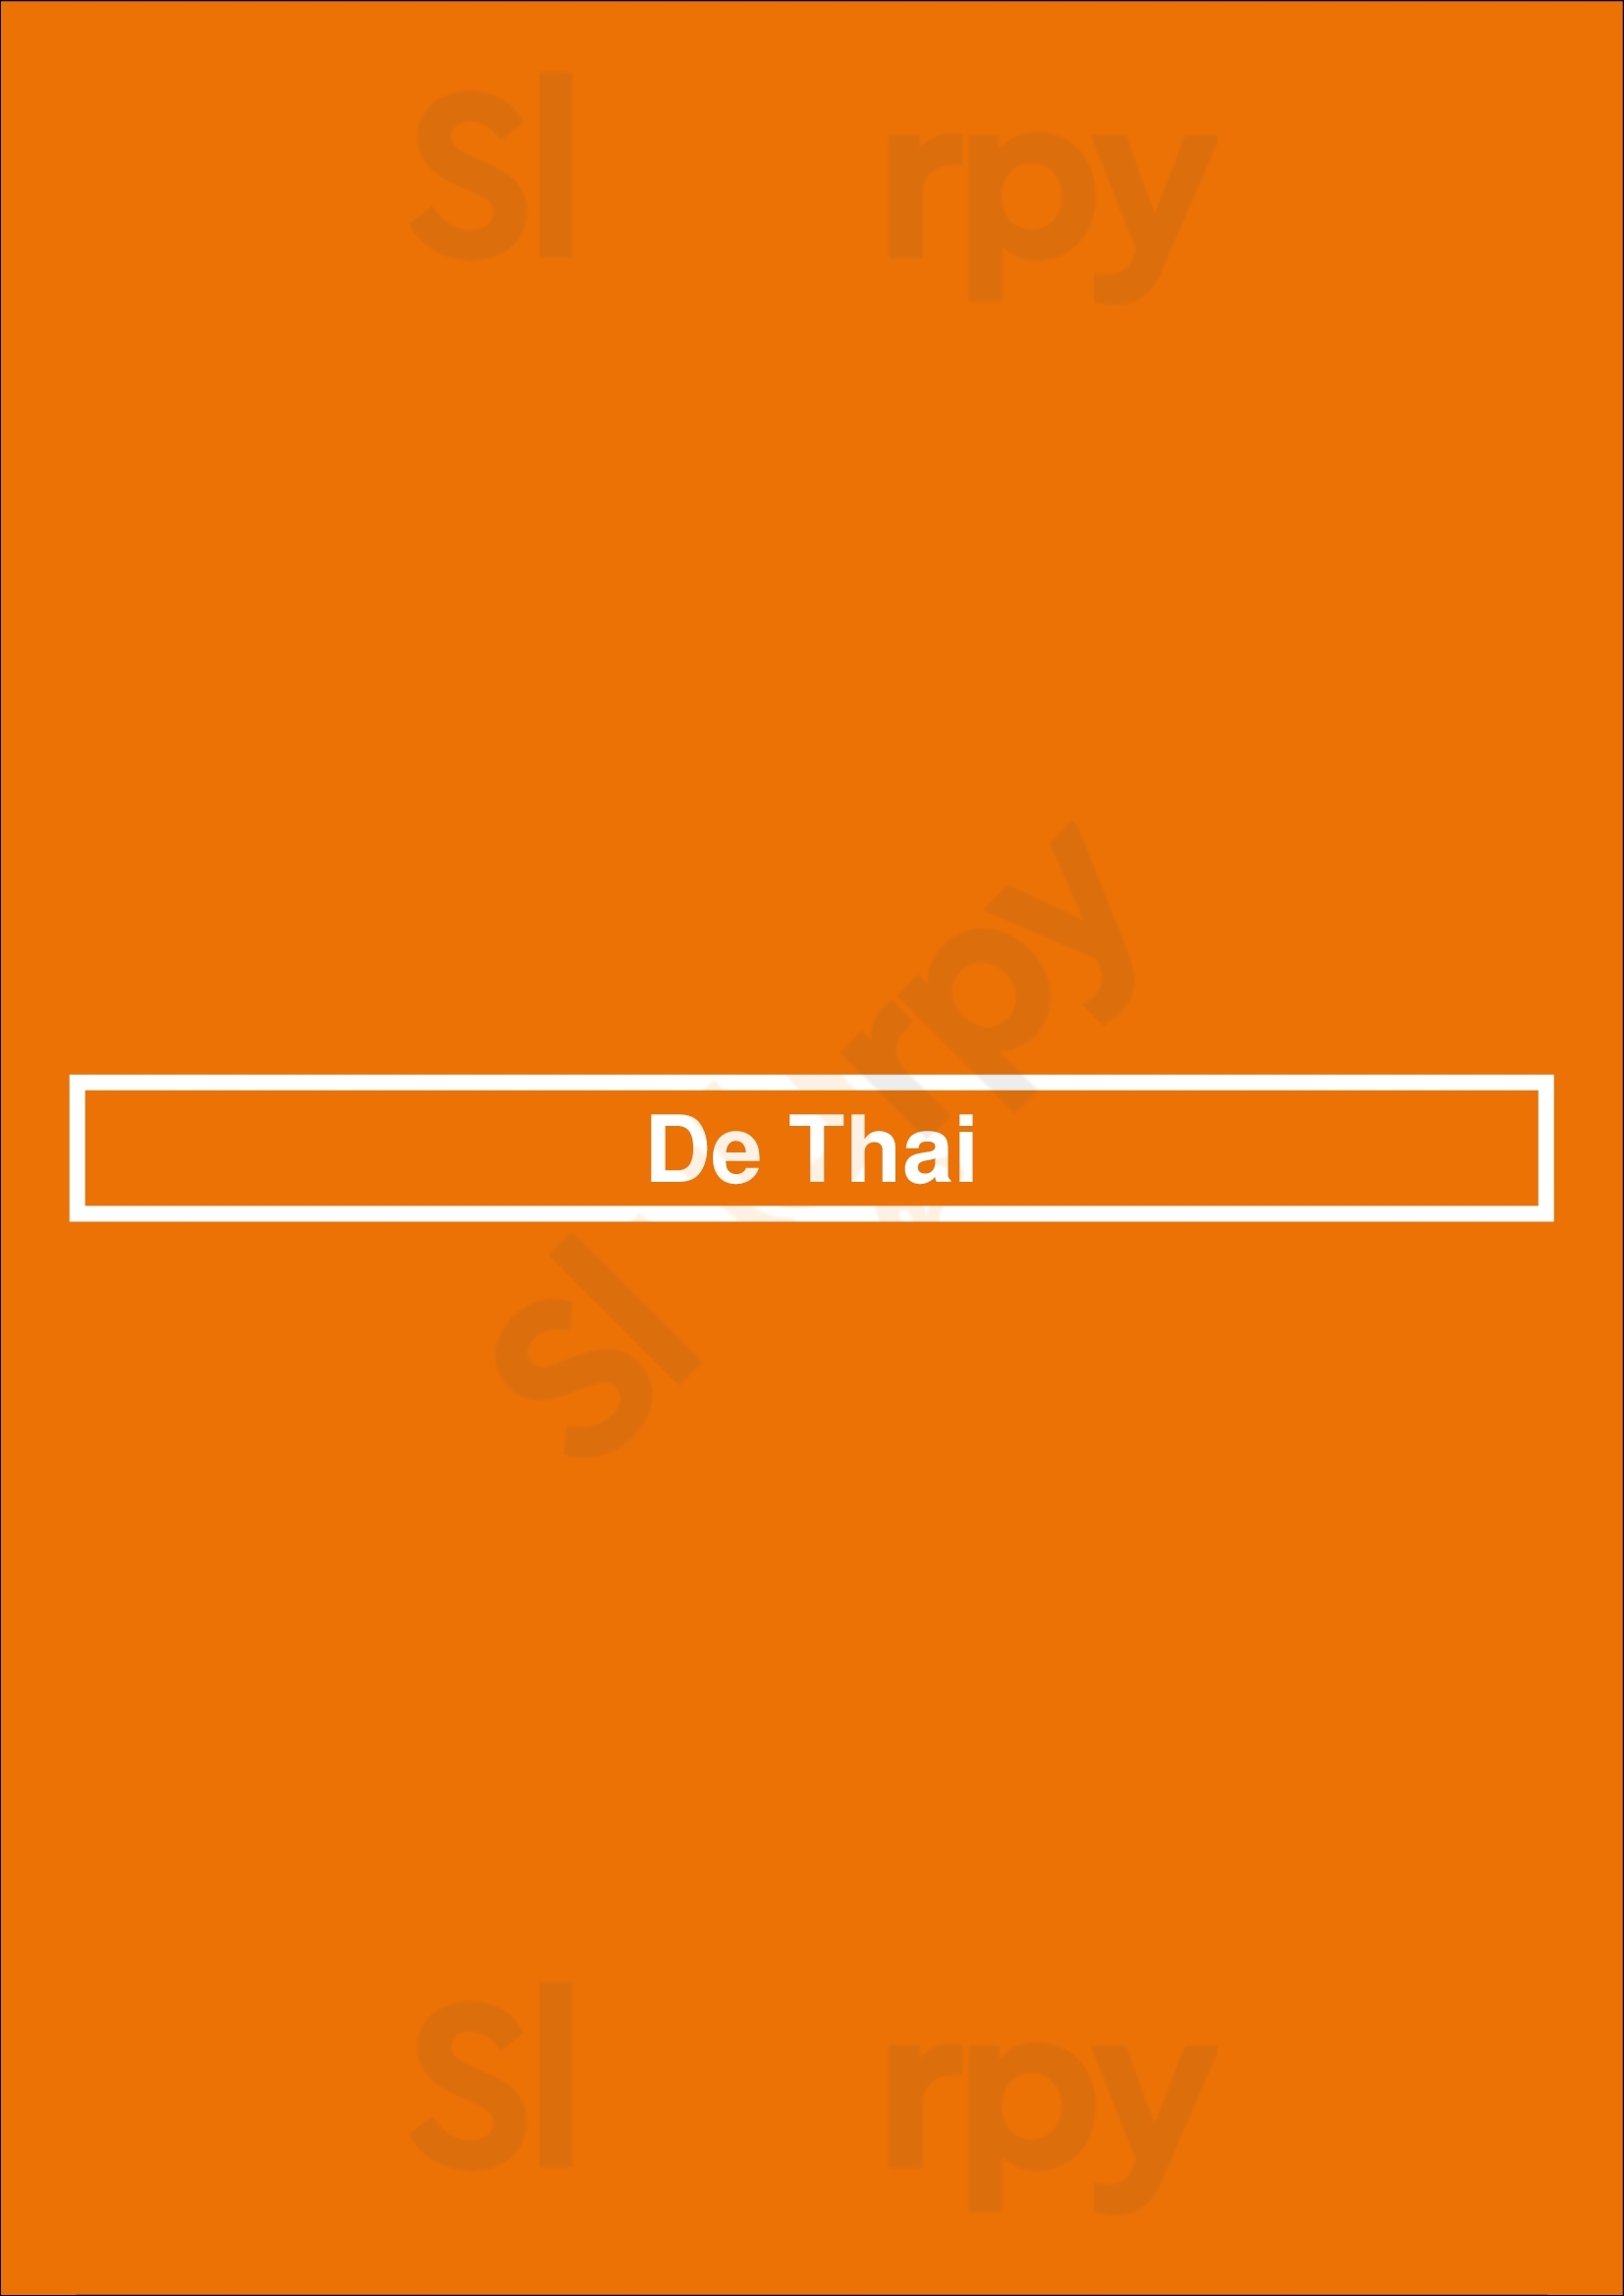 De Thai Utrecht Menu - 1